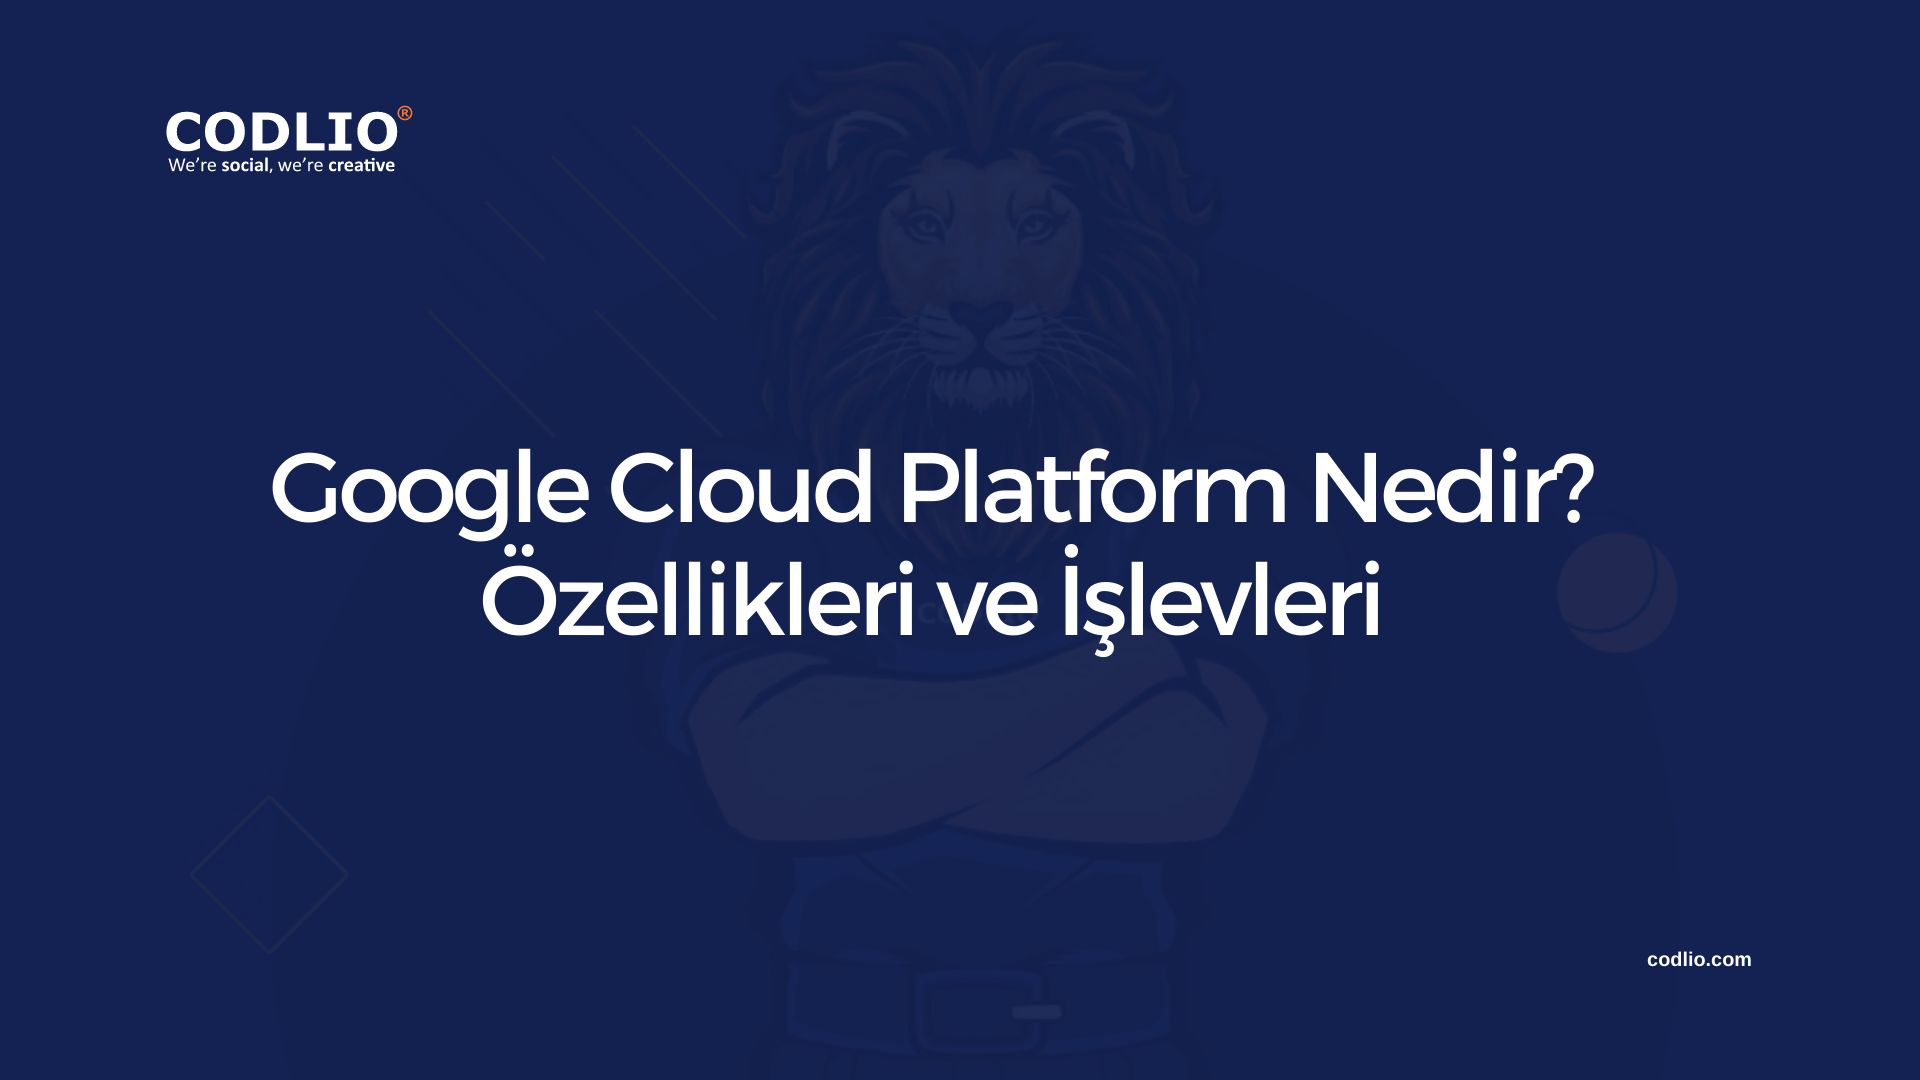 Google Cloud Platform Nedir? Özellikleri ve İşlevleri